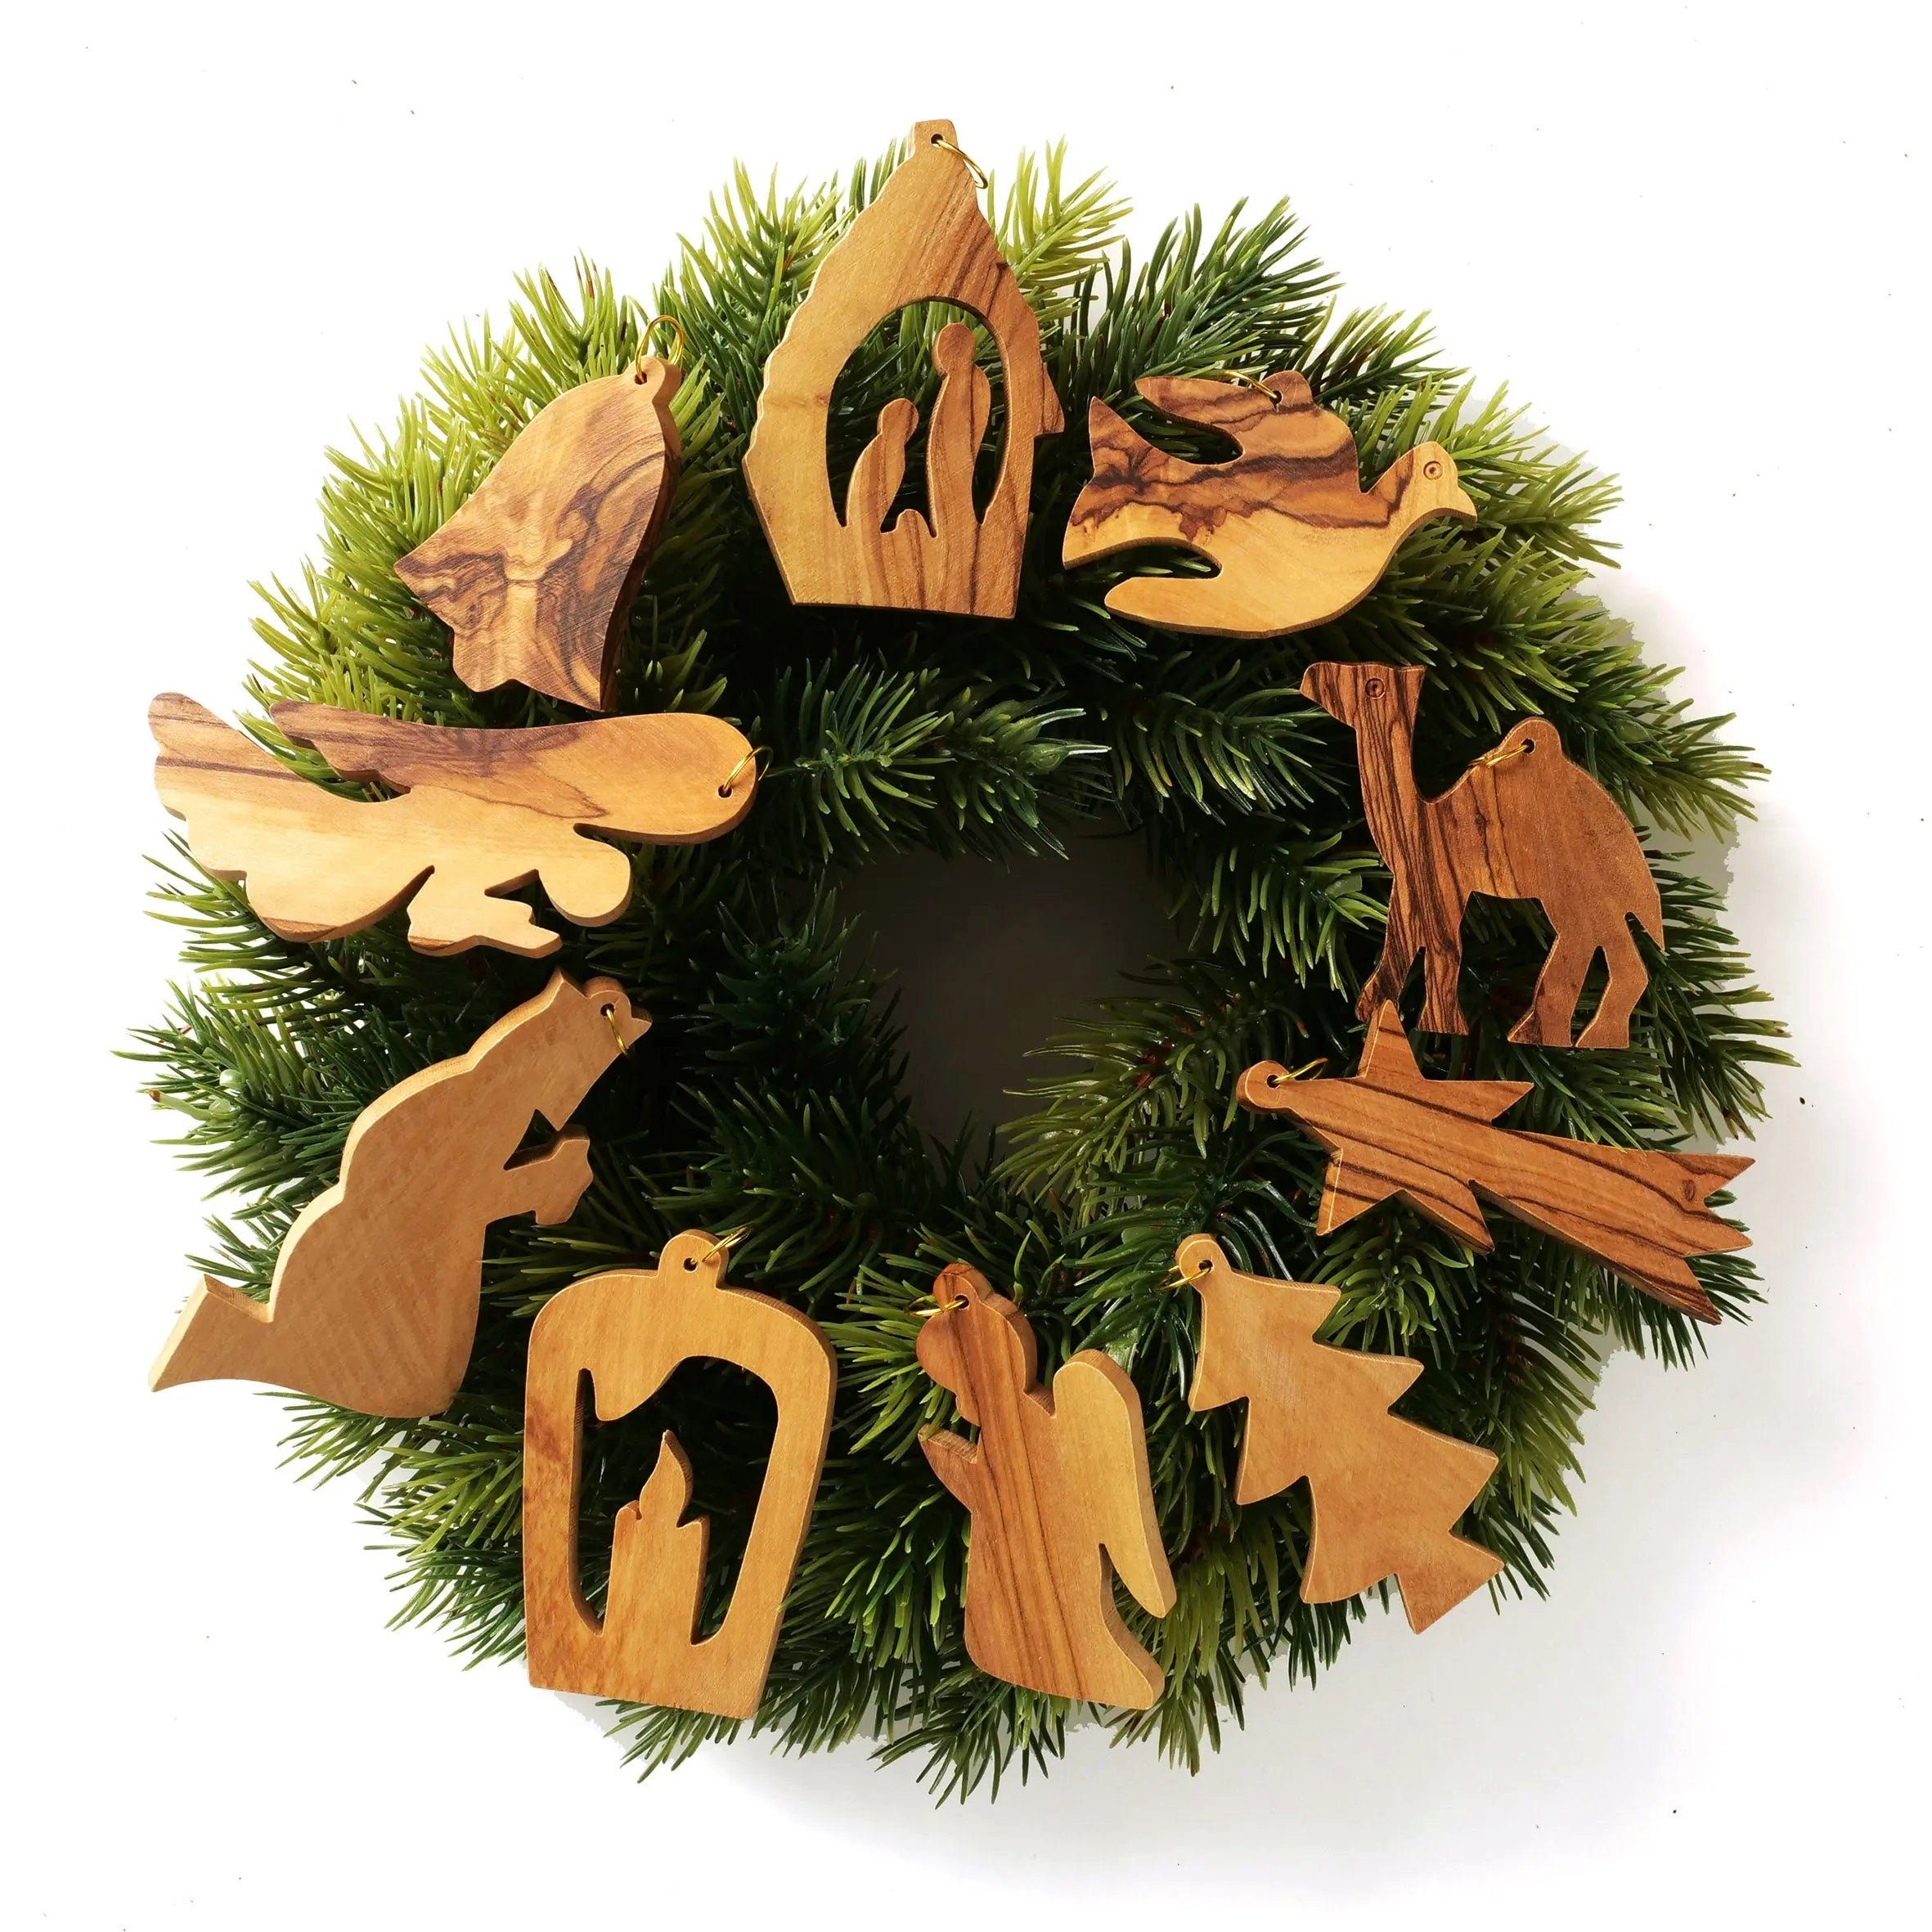 Dekoobjekt Olivenholz, Kassis Bethlehem, handgemacht, Weihnachtsdeko Holzdeko aus Anhänger umweltfreundlich, Baumschmuck Naturprodukt, aus